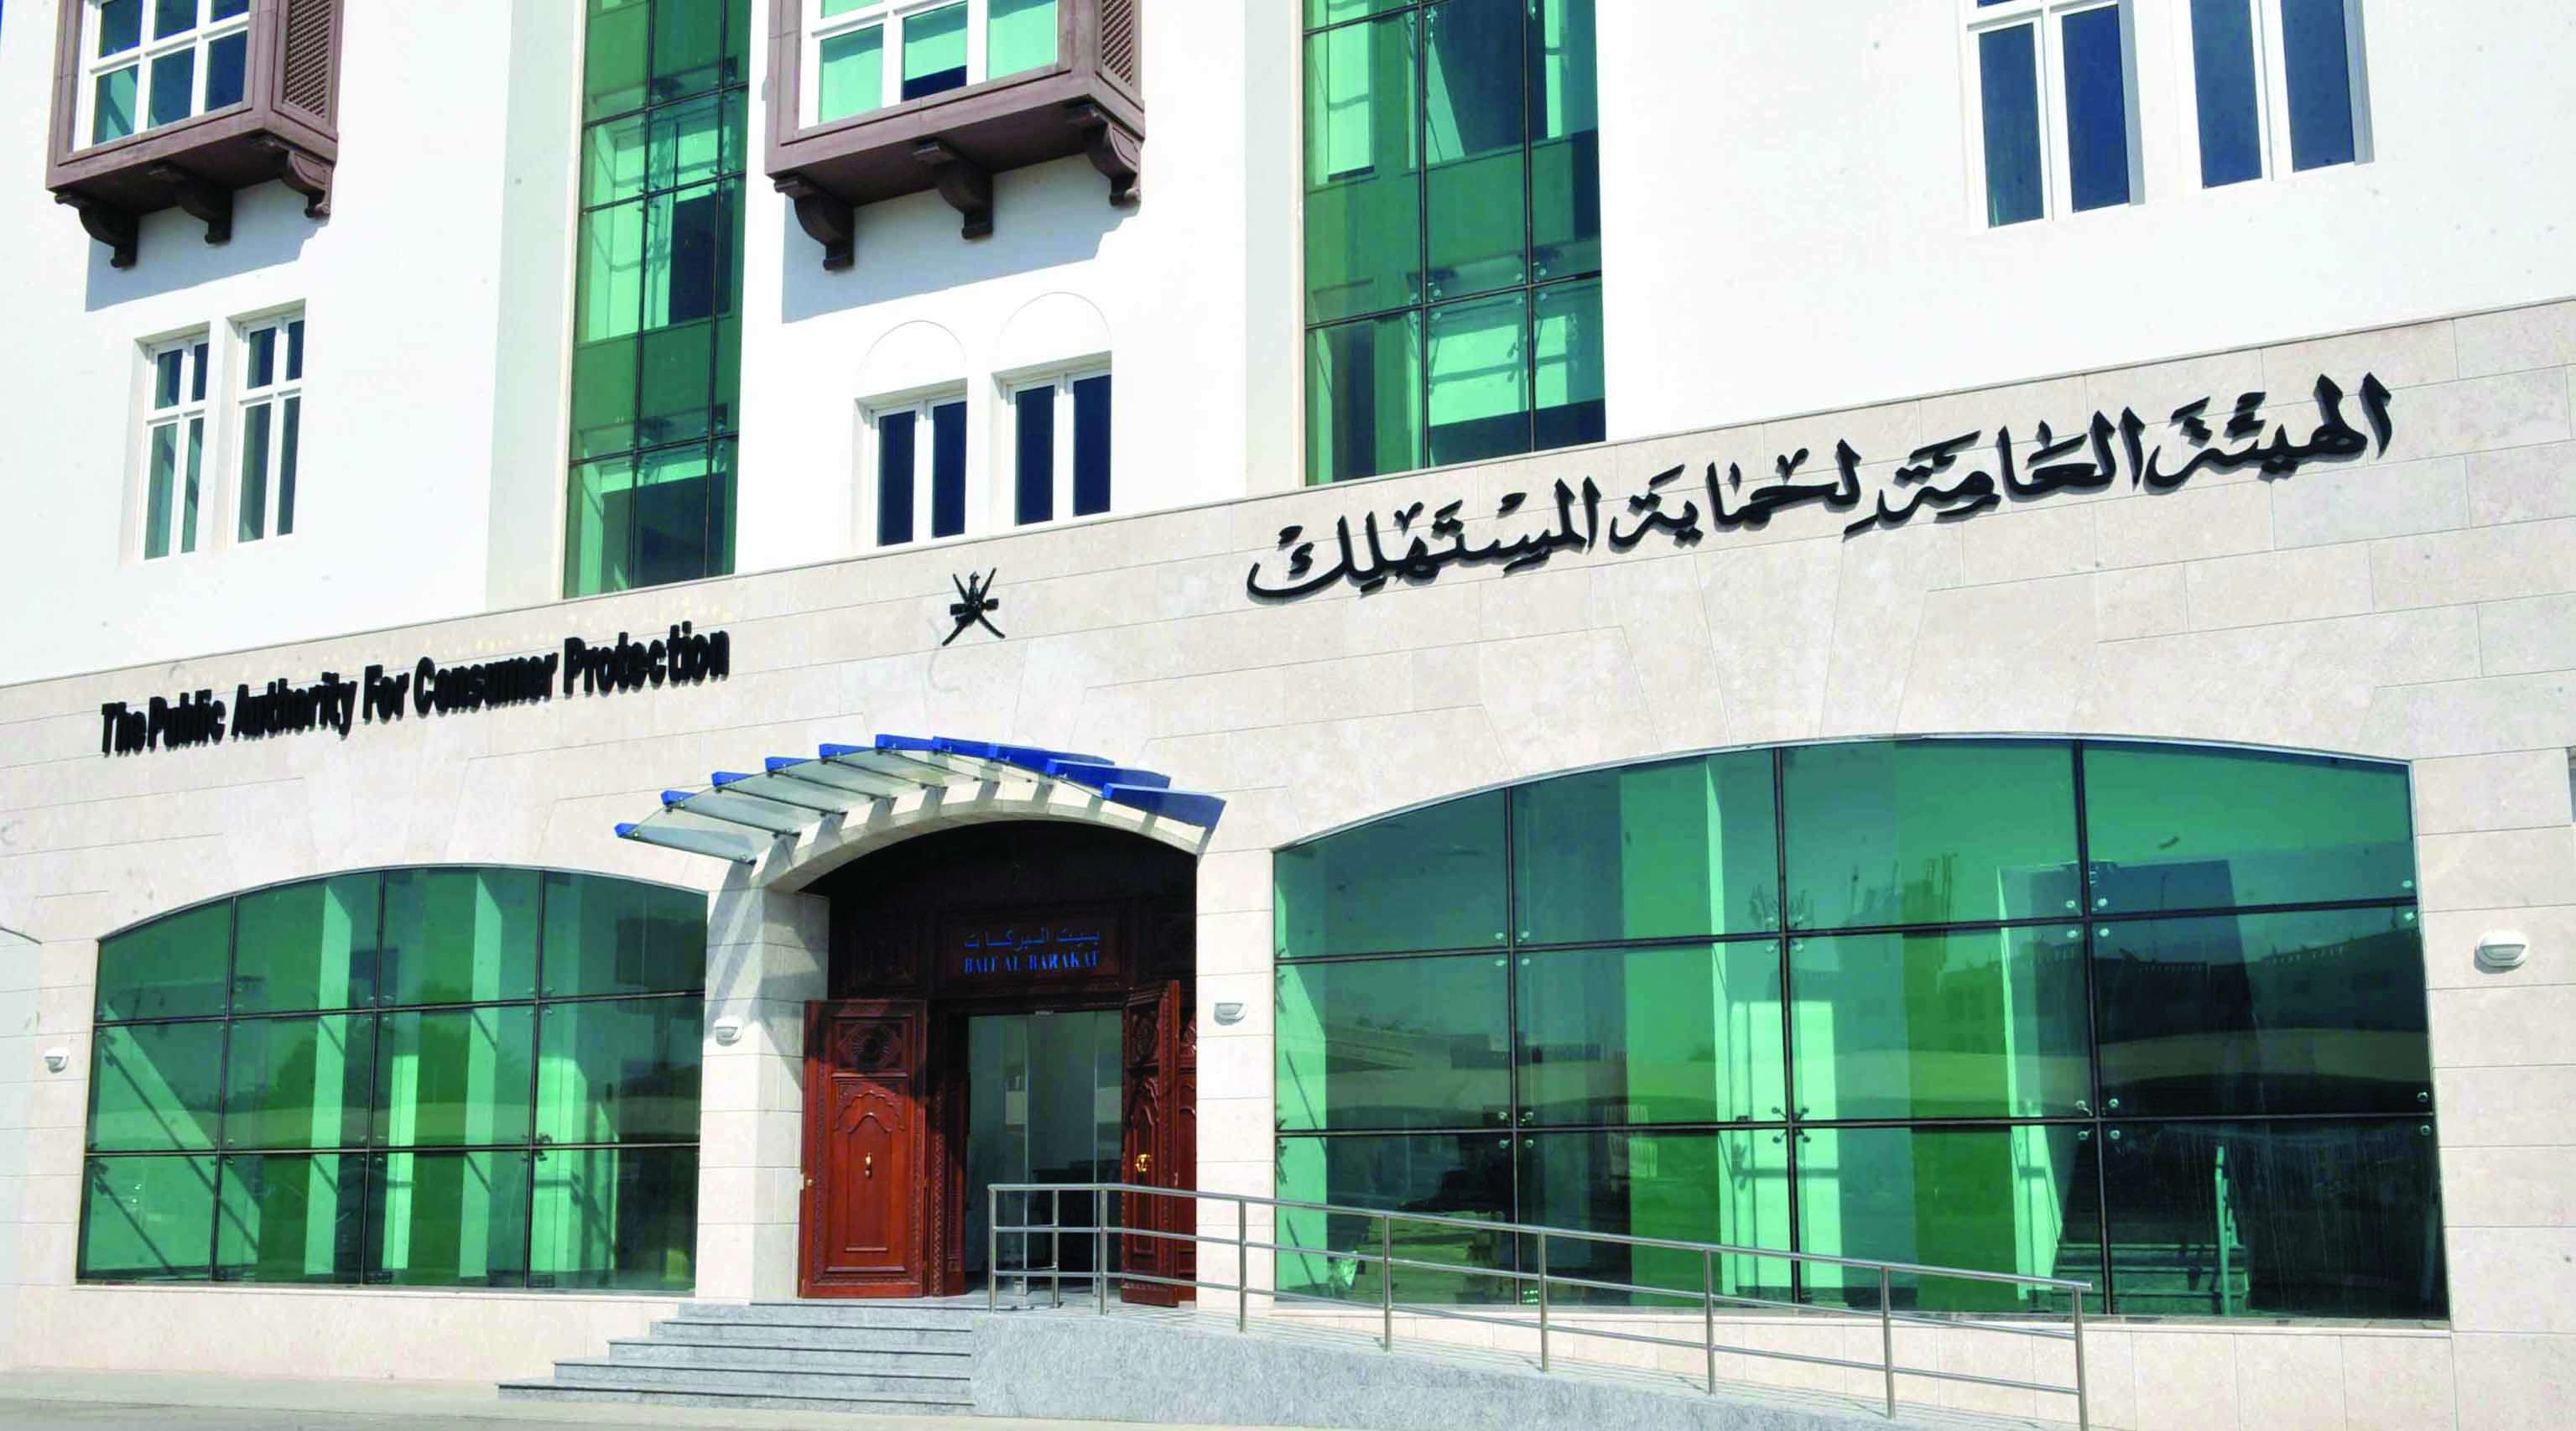 ضد مؤسسات تجارية بإبراءأكثر من 6 آلاف ريال عماني غرامات إدارية